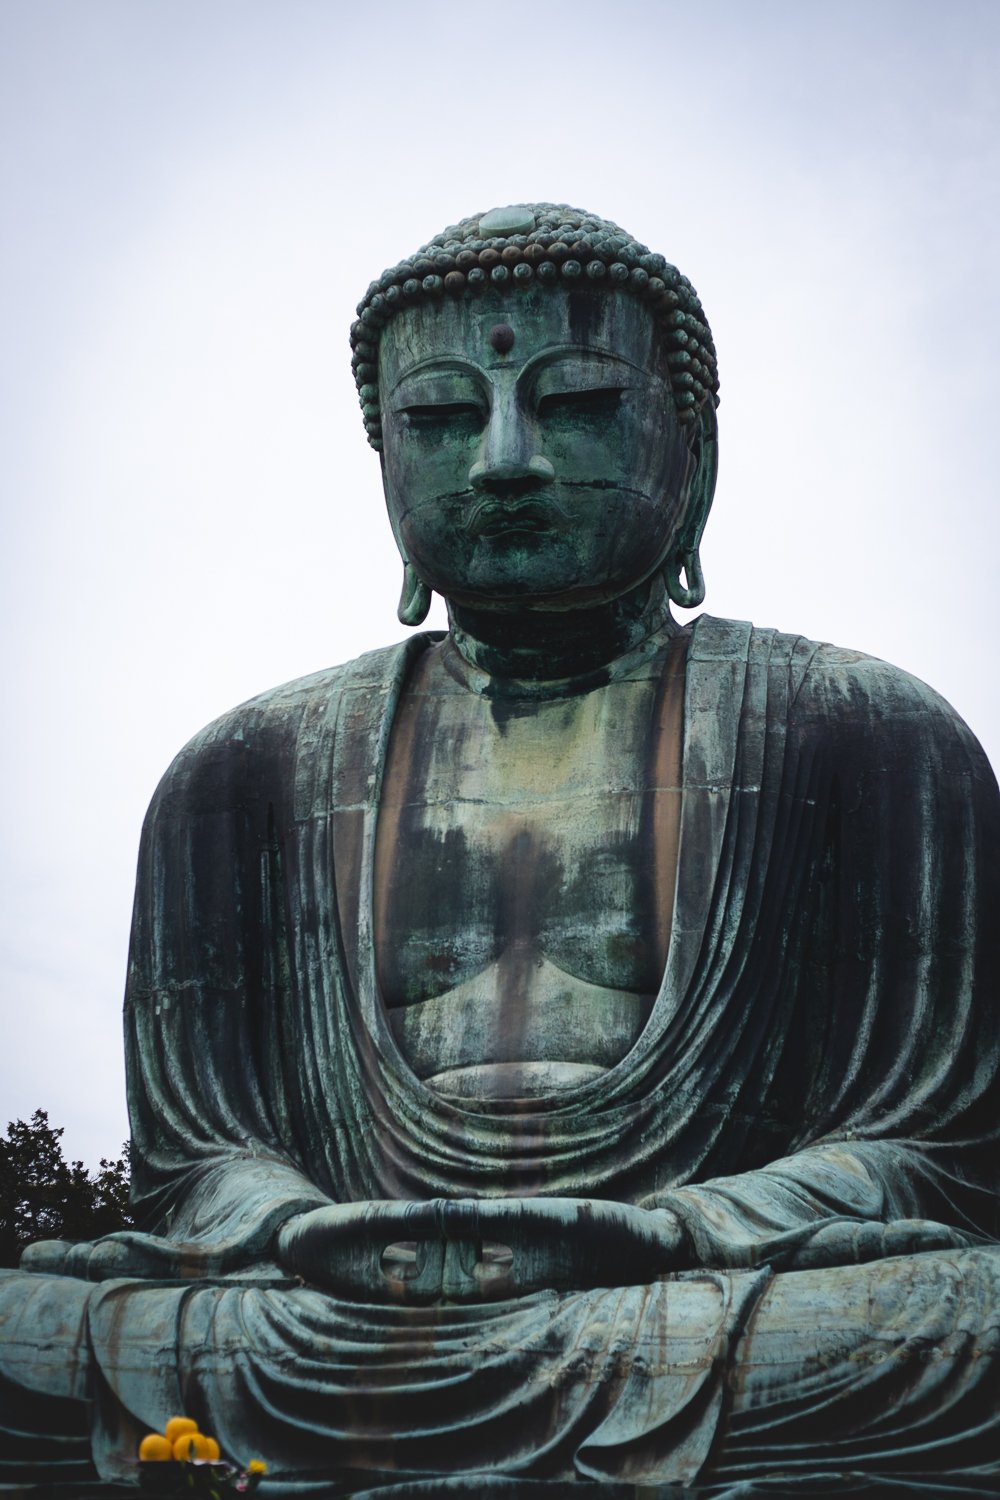 Le grand bouddha de Kamakura en bronze. Il est assis en tailleur et ses mains sont jointes, paumes vers le haut.